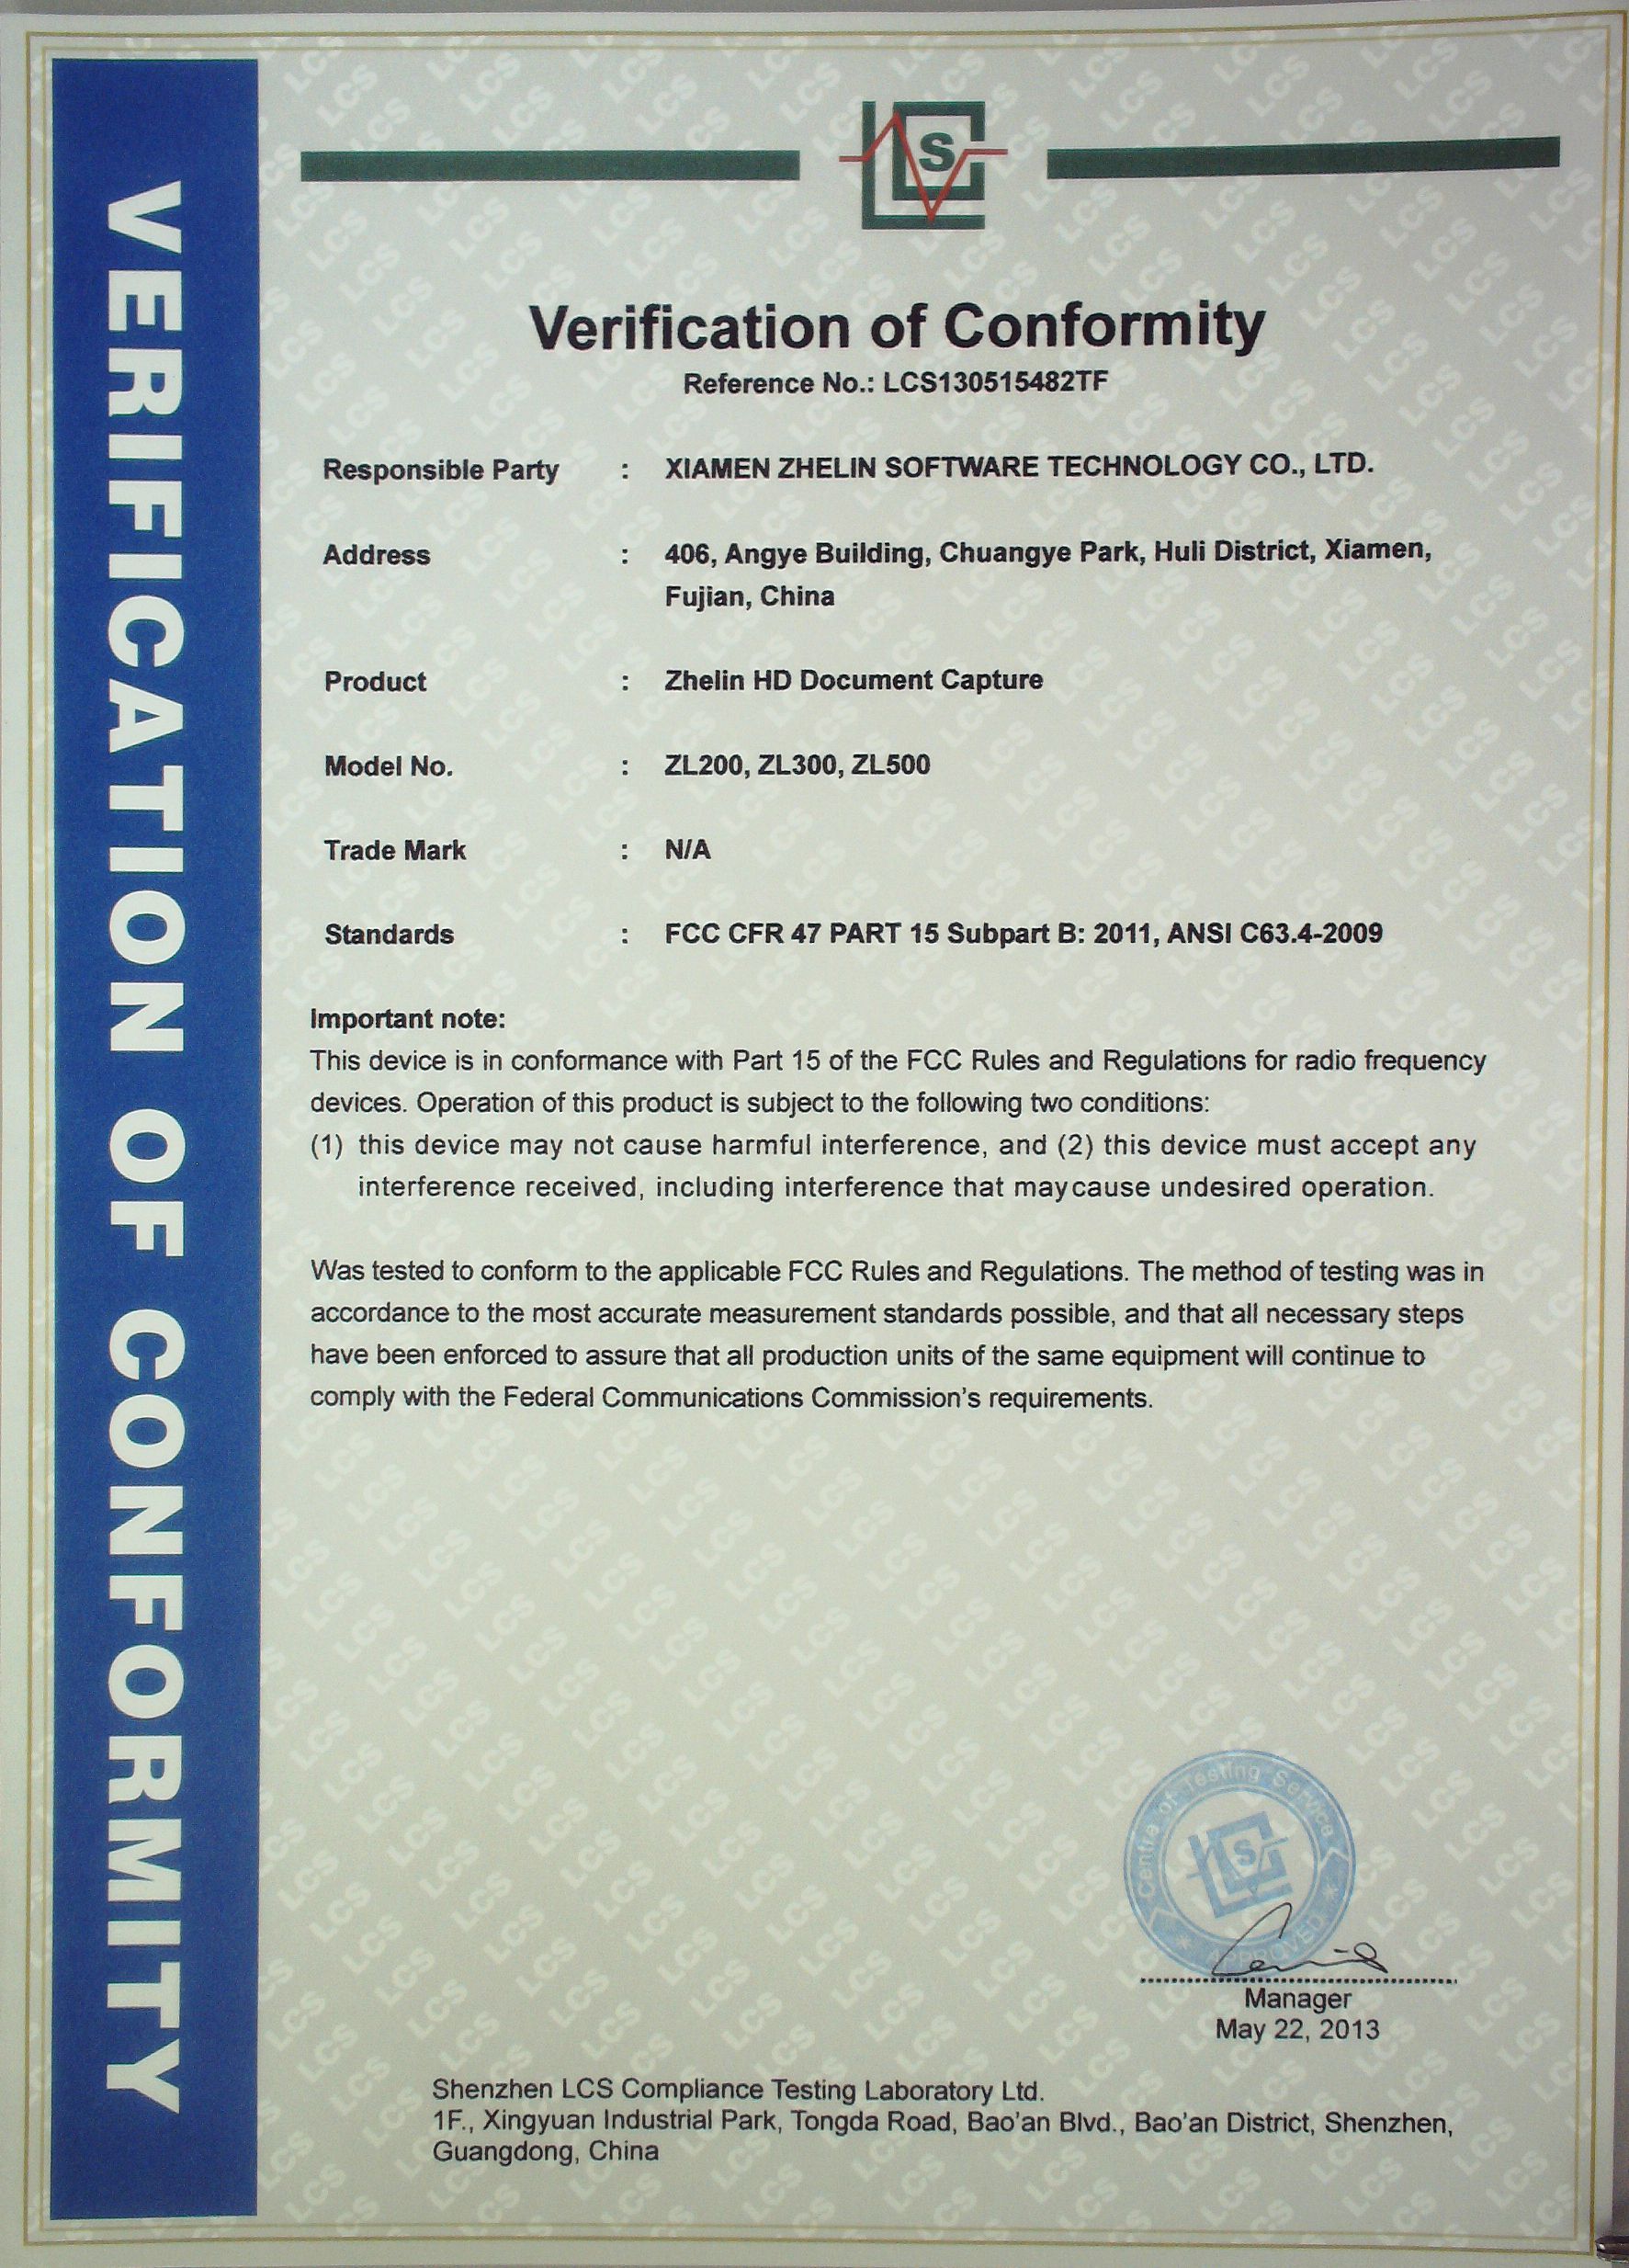 哲林高拍仪通过FCC认证 证书图片